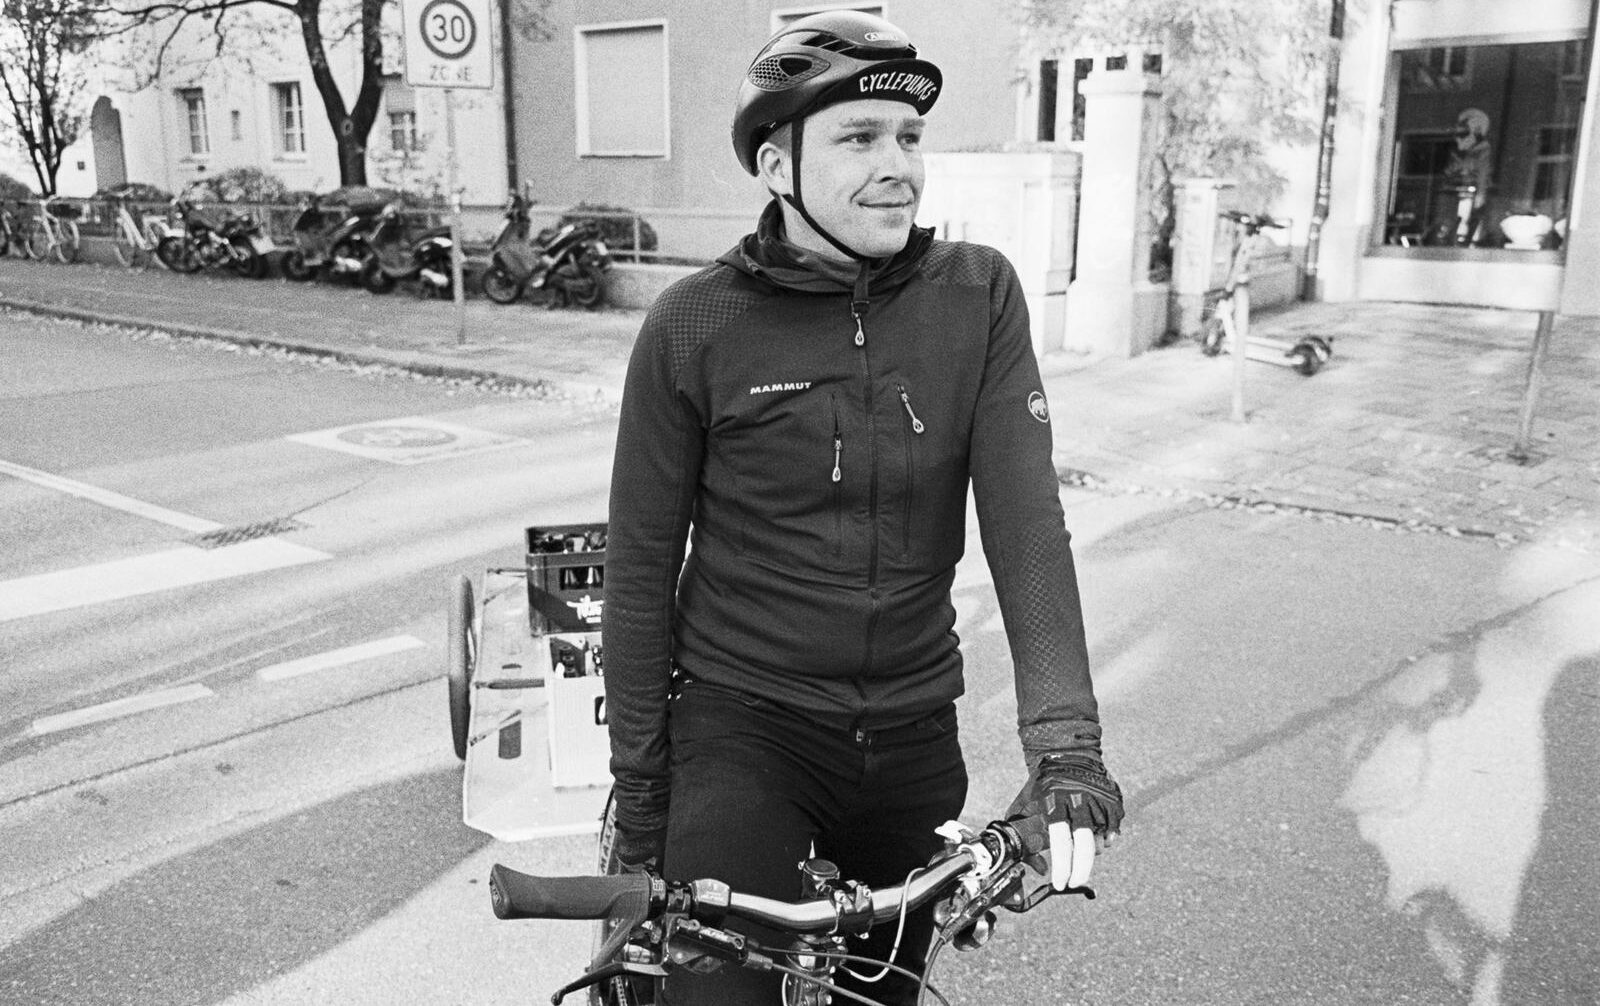 Bicycle Mayor Munich